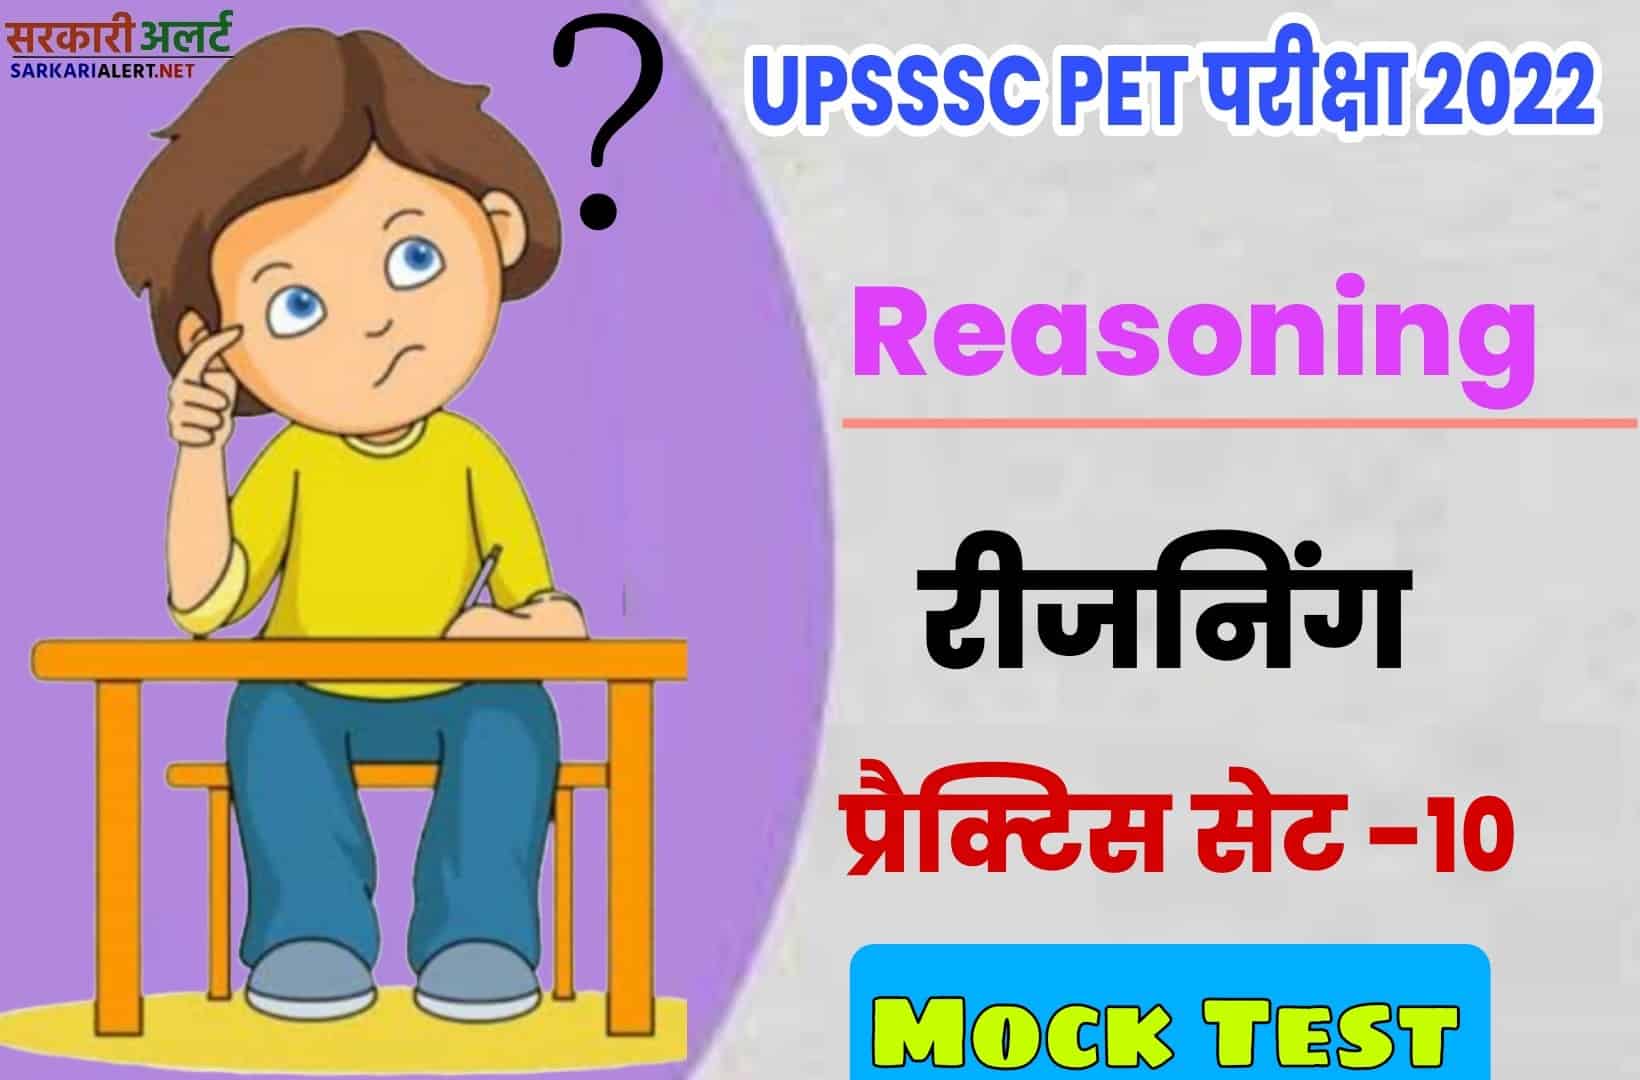 UPSSSC PET Reasoning Practice Set 10 | परीक्षा से पहले एक नजर जरूर पढ़ें मुख्य प्रश्नों संग्रह